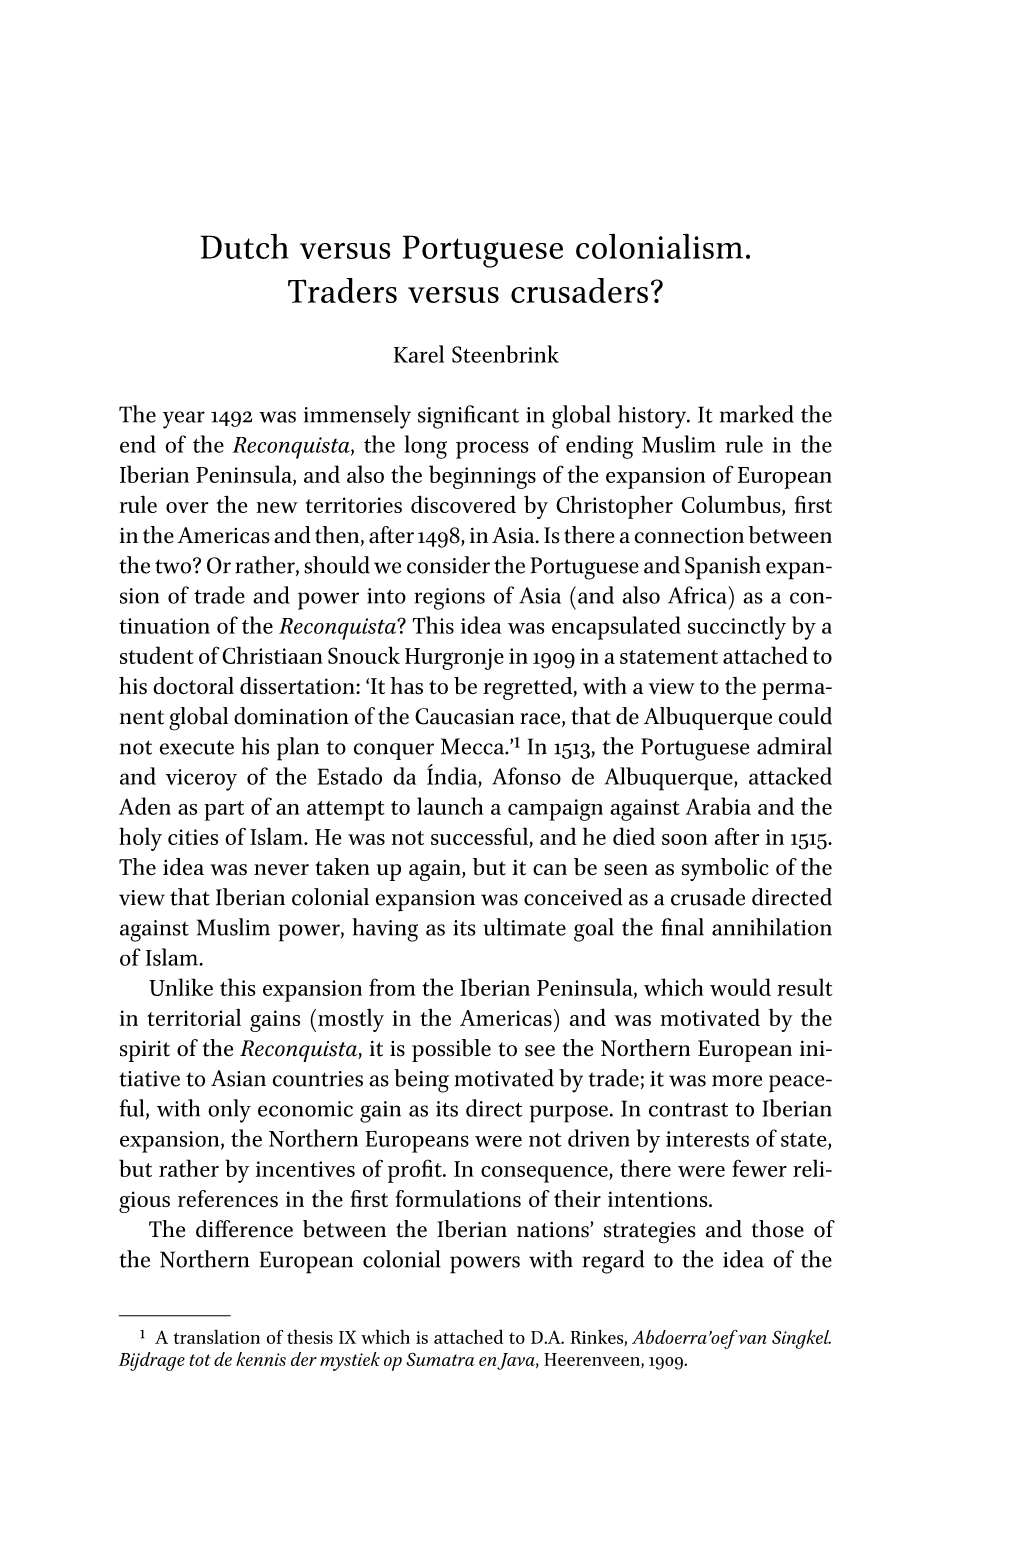 Dutch Versus Portuguese Colonialism. Traders Versus Crusaders?